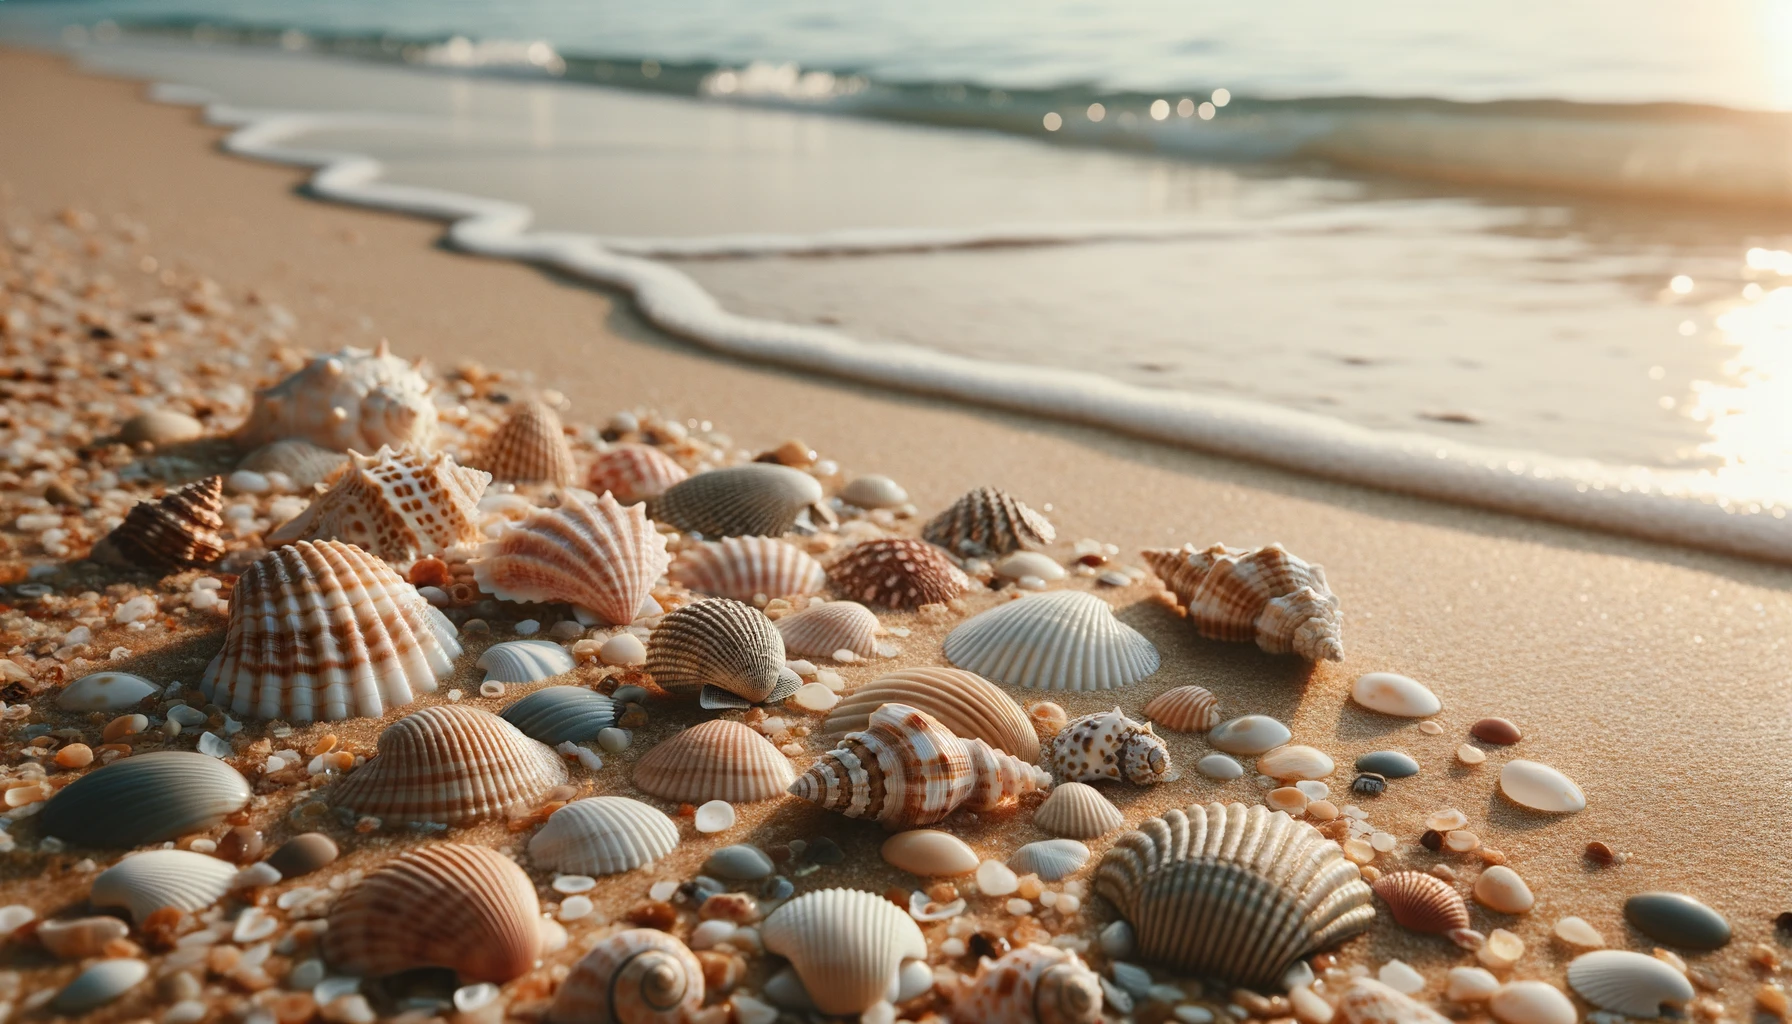 Einige verschiedene Muscheln verschiedener Formen und Größen am Strand, im Hintergrund eine seichte Welle.